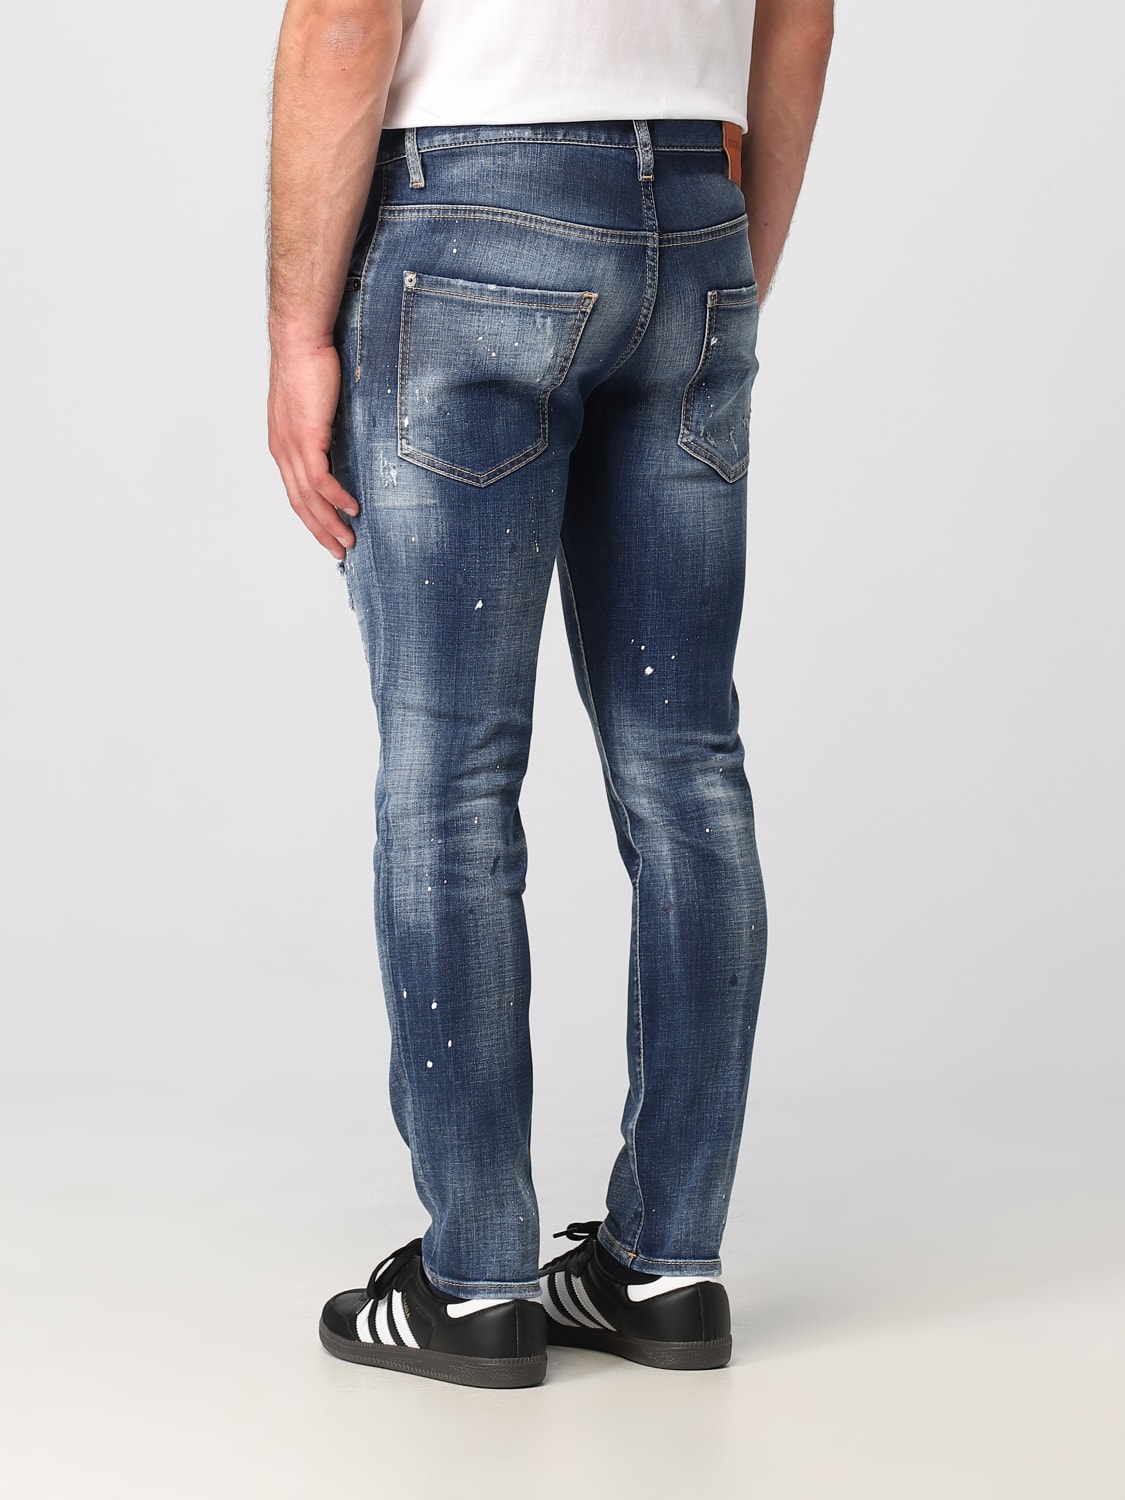 DSQUARED2: Jeans para hombre, Denim  Jeans Dsquared2 S71LB1323S30309 en  línea en